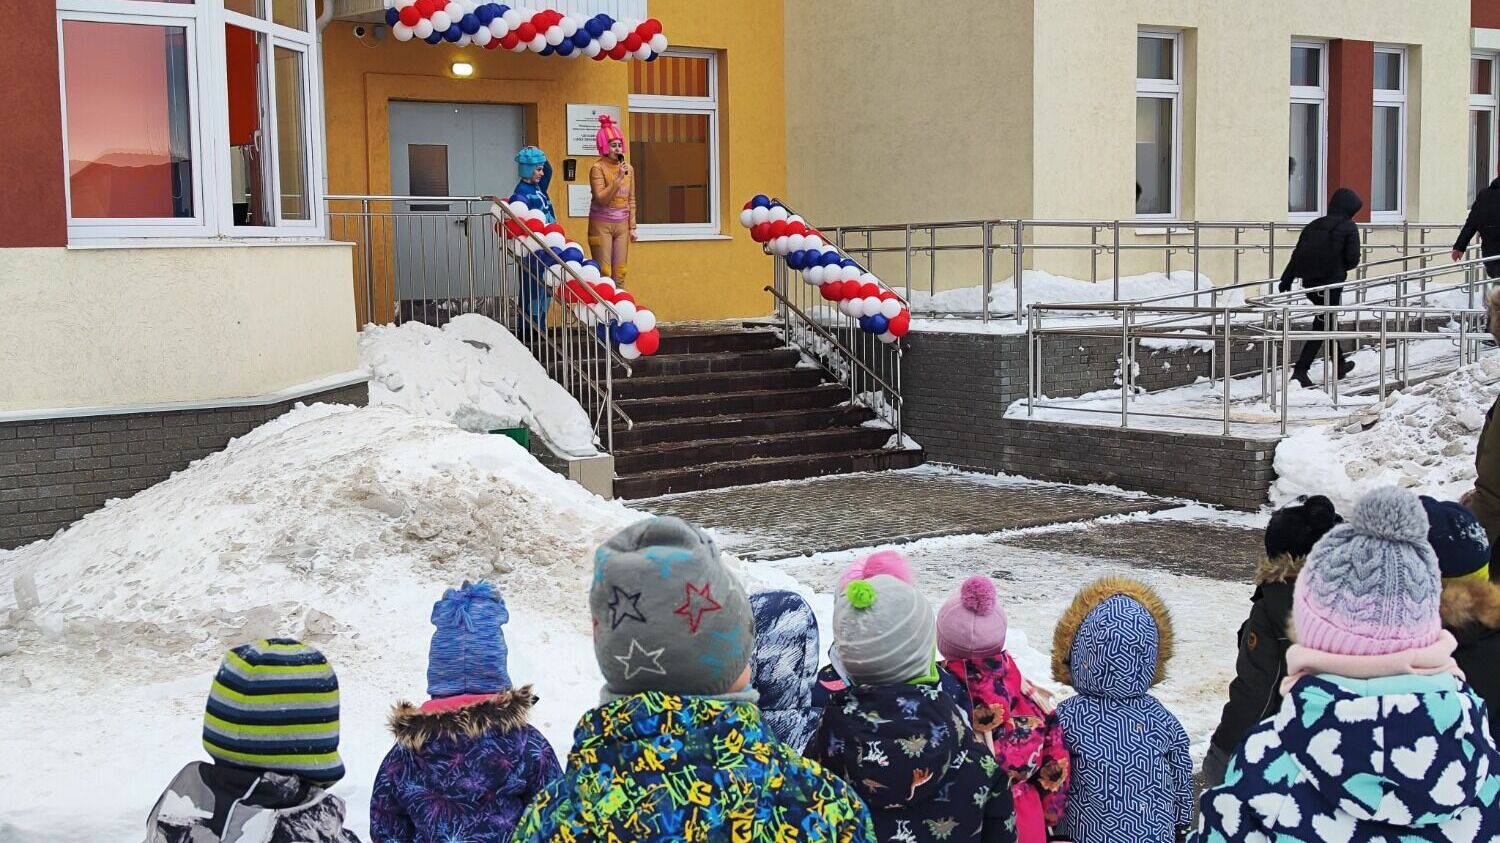 Детский сад на 280 мест построили в КМ Анкудиновский Парк